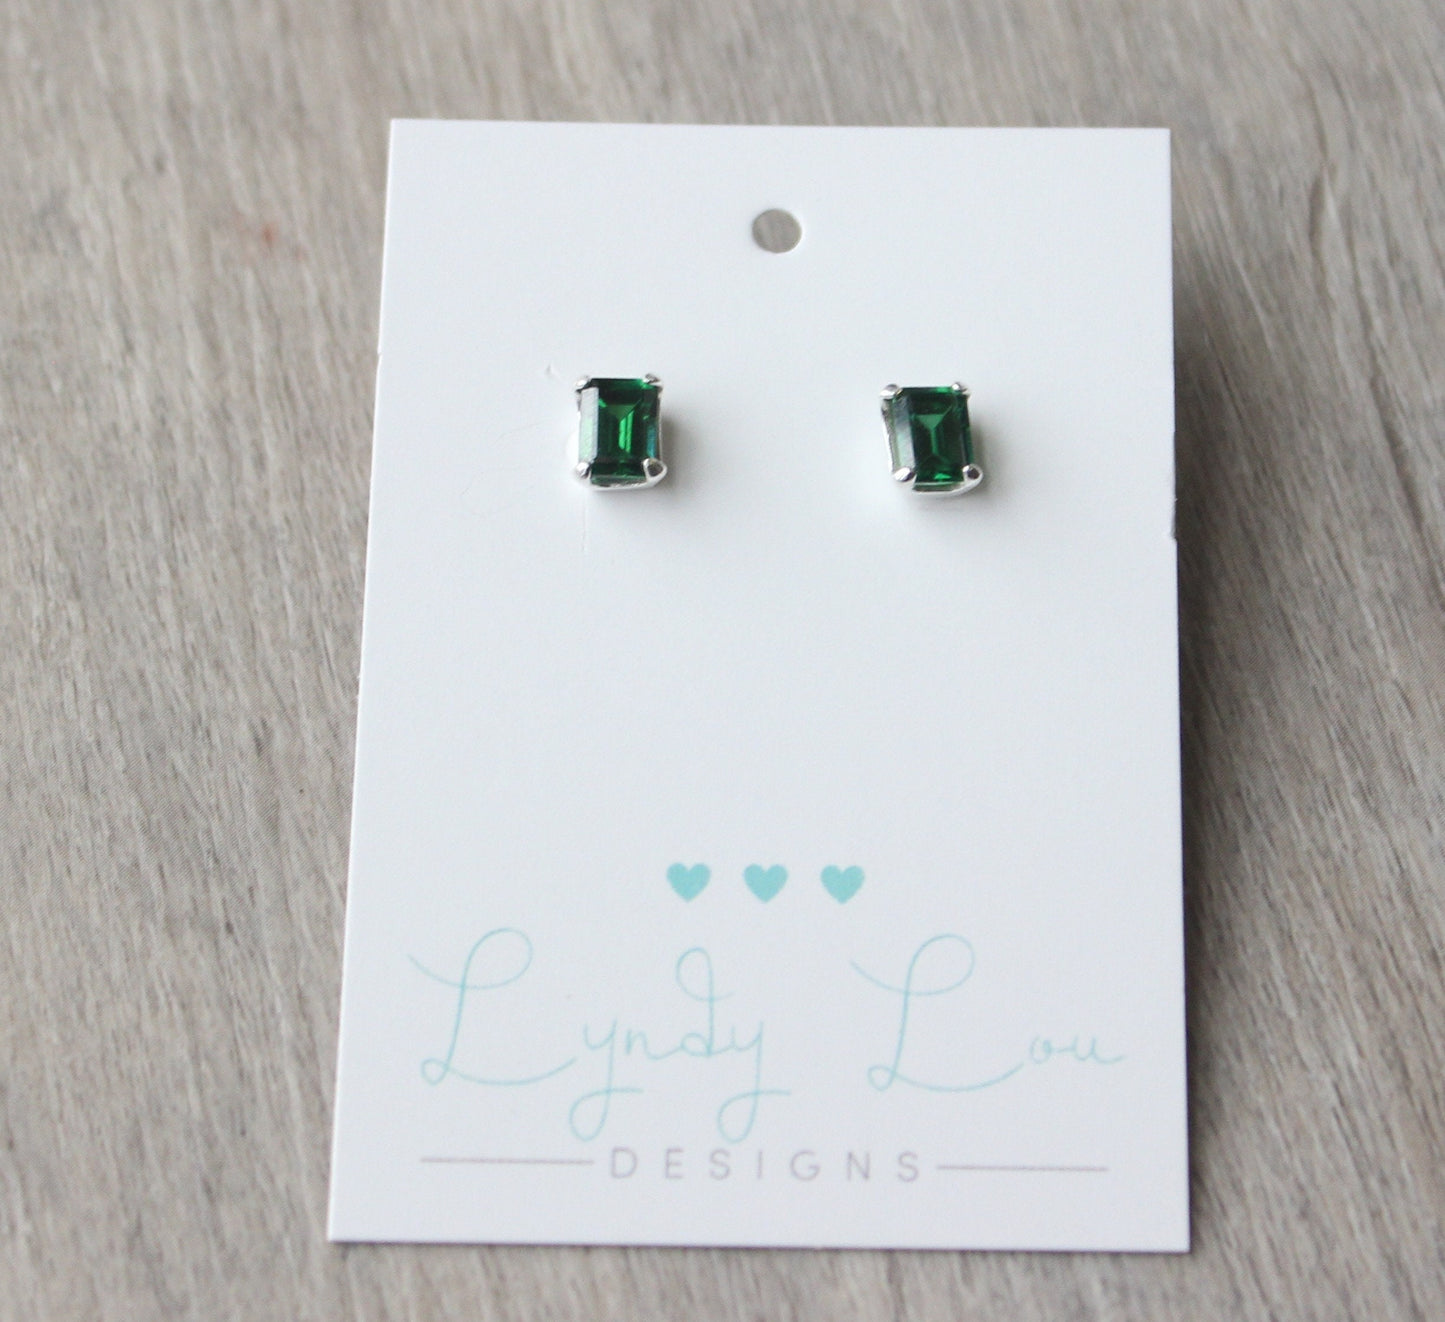 Emerald Cut Emerald Earrings // Sterling Silver Emerald Cubic Zirconia Stud Earrings // May Birthstone Stud Earrings // Emerald Cut Studs